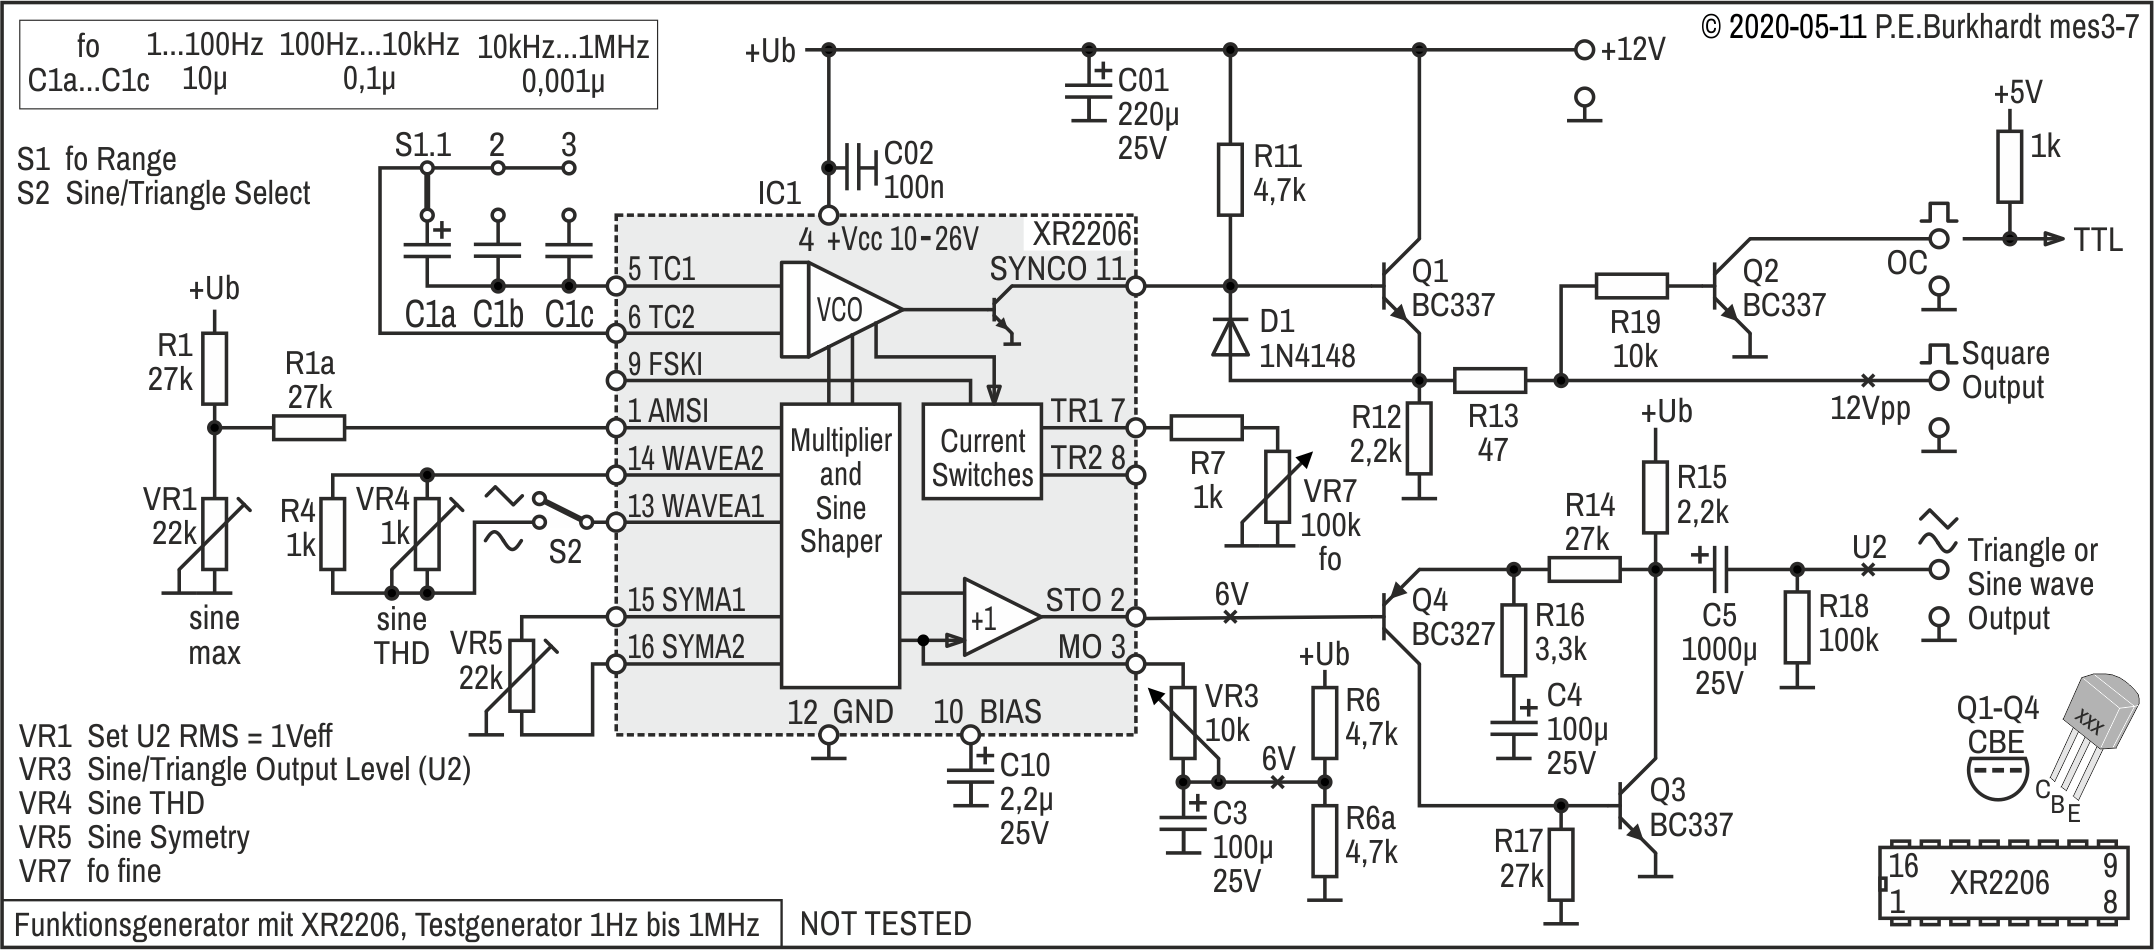 Funktionsgenerator XR2206 (1 Hz bis 1 MHz)